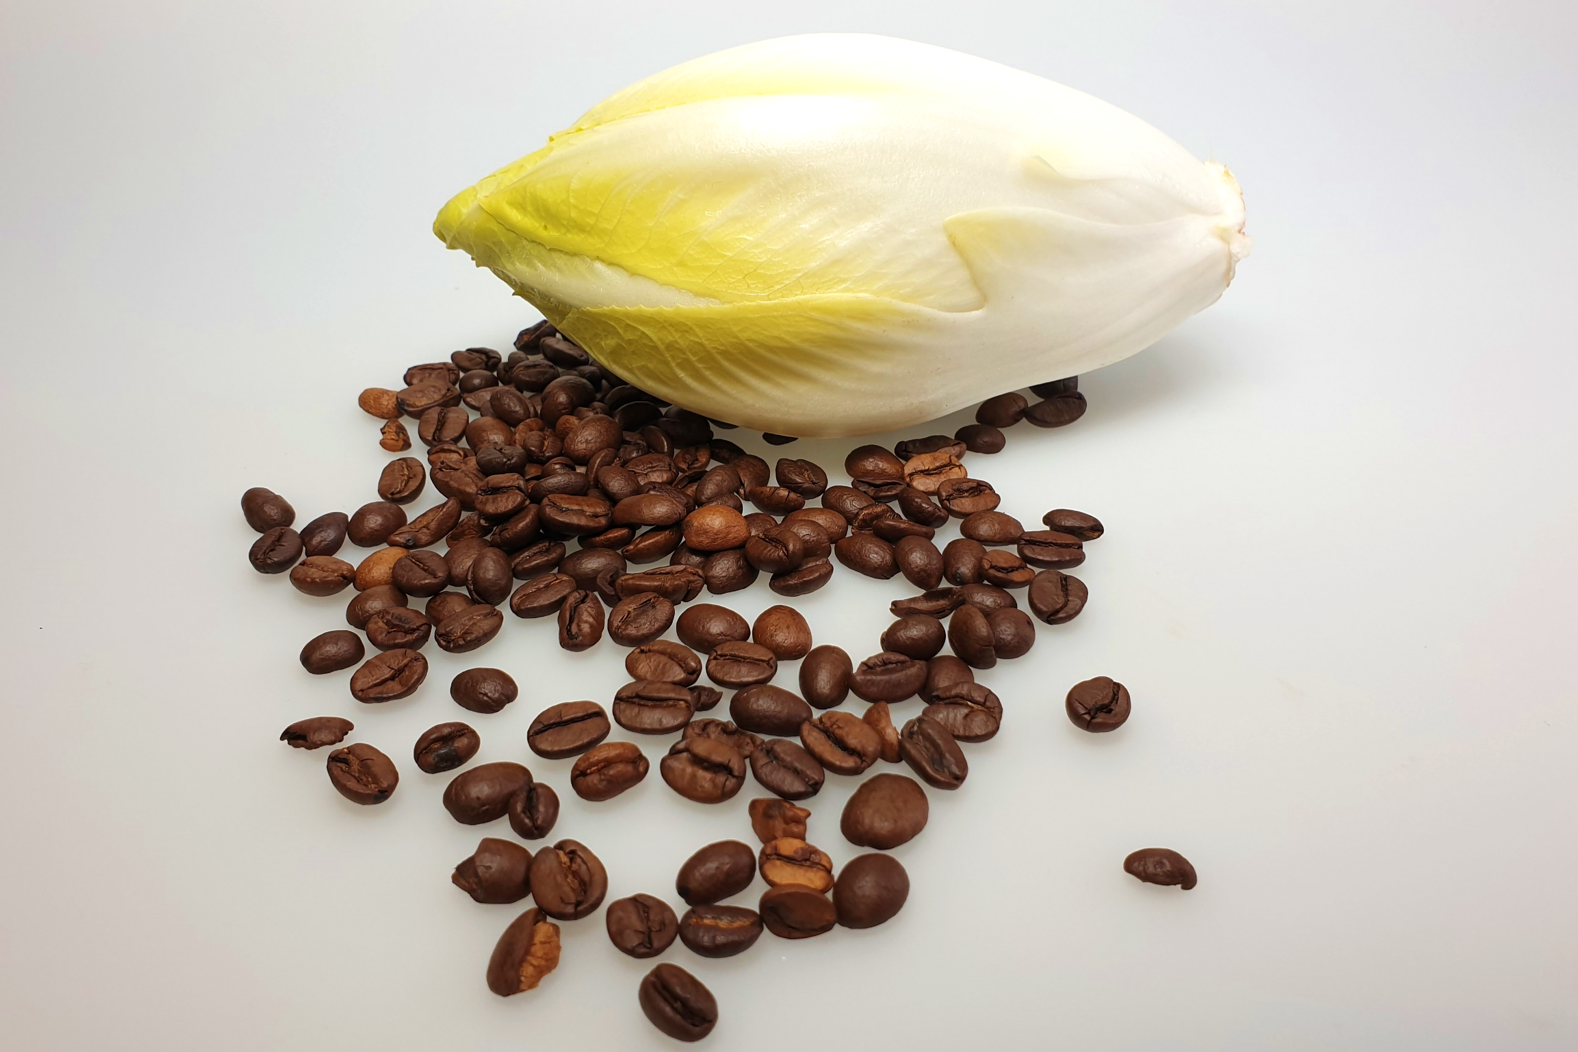 Chicorée und Röstkaffee enthalten unterschiedliche Bitterstoffe.